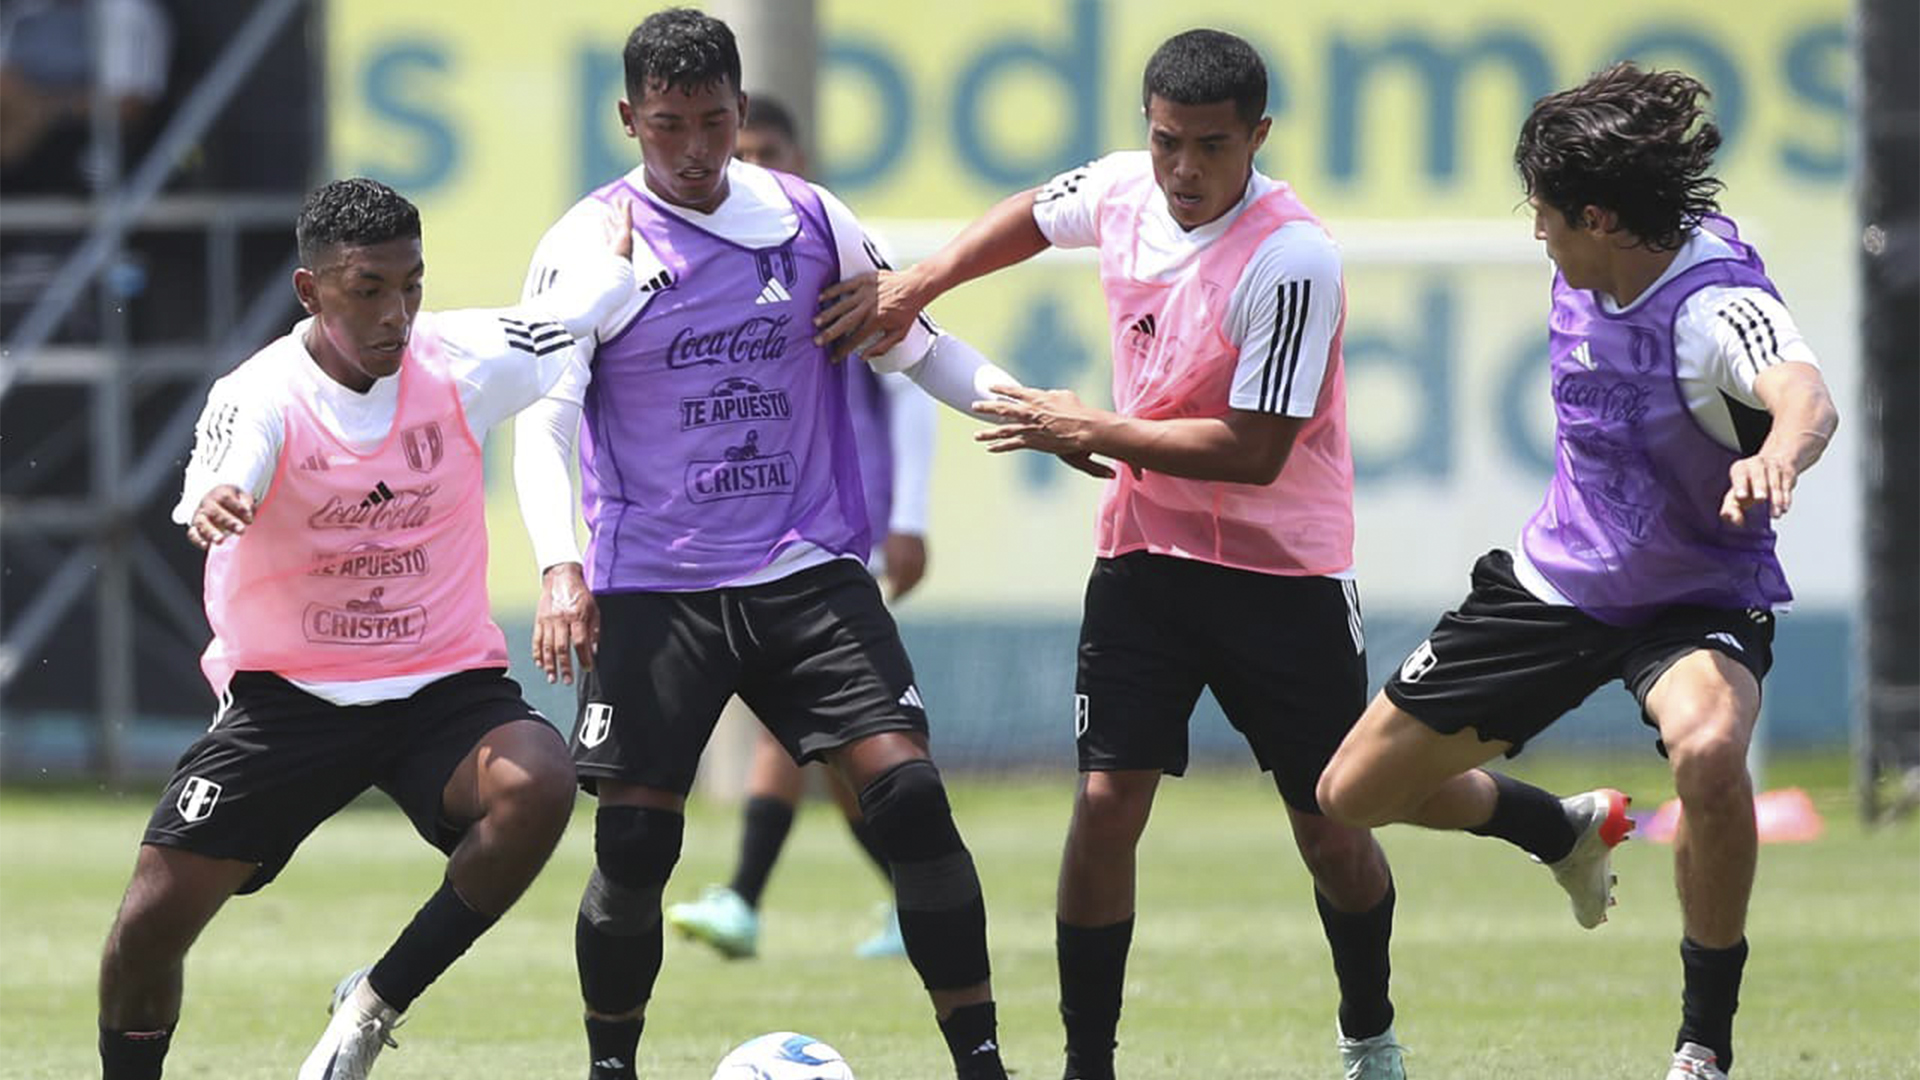 La selección peruana sub 20 tendrá su última prueba previo al Sudamericano que inicia el 19 de enero. (FPF)